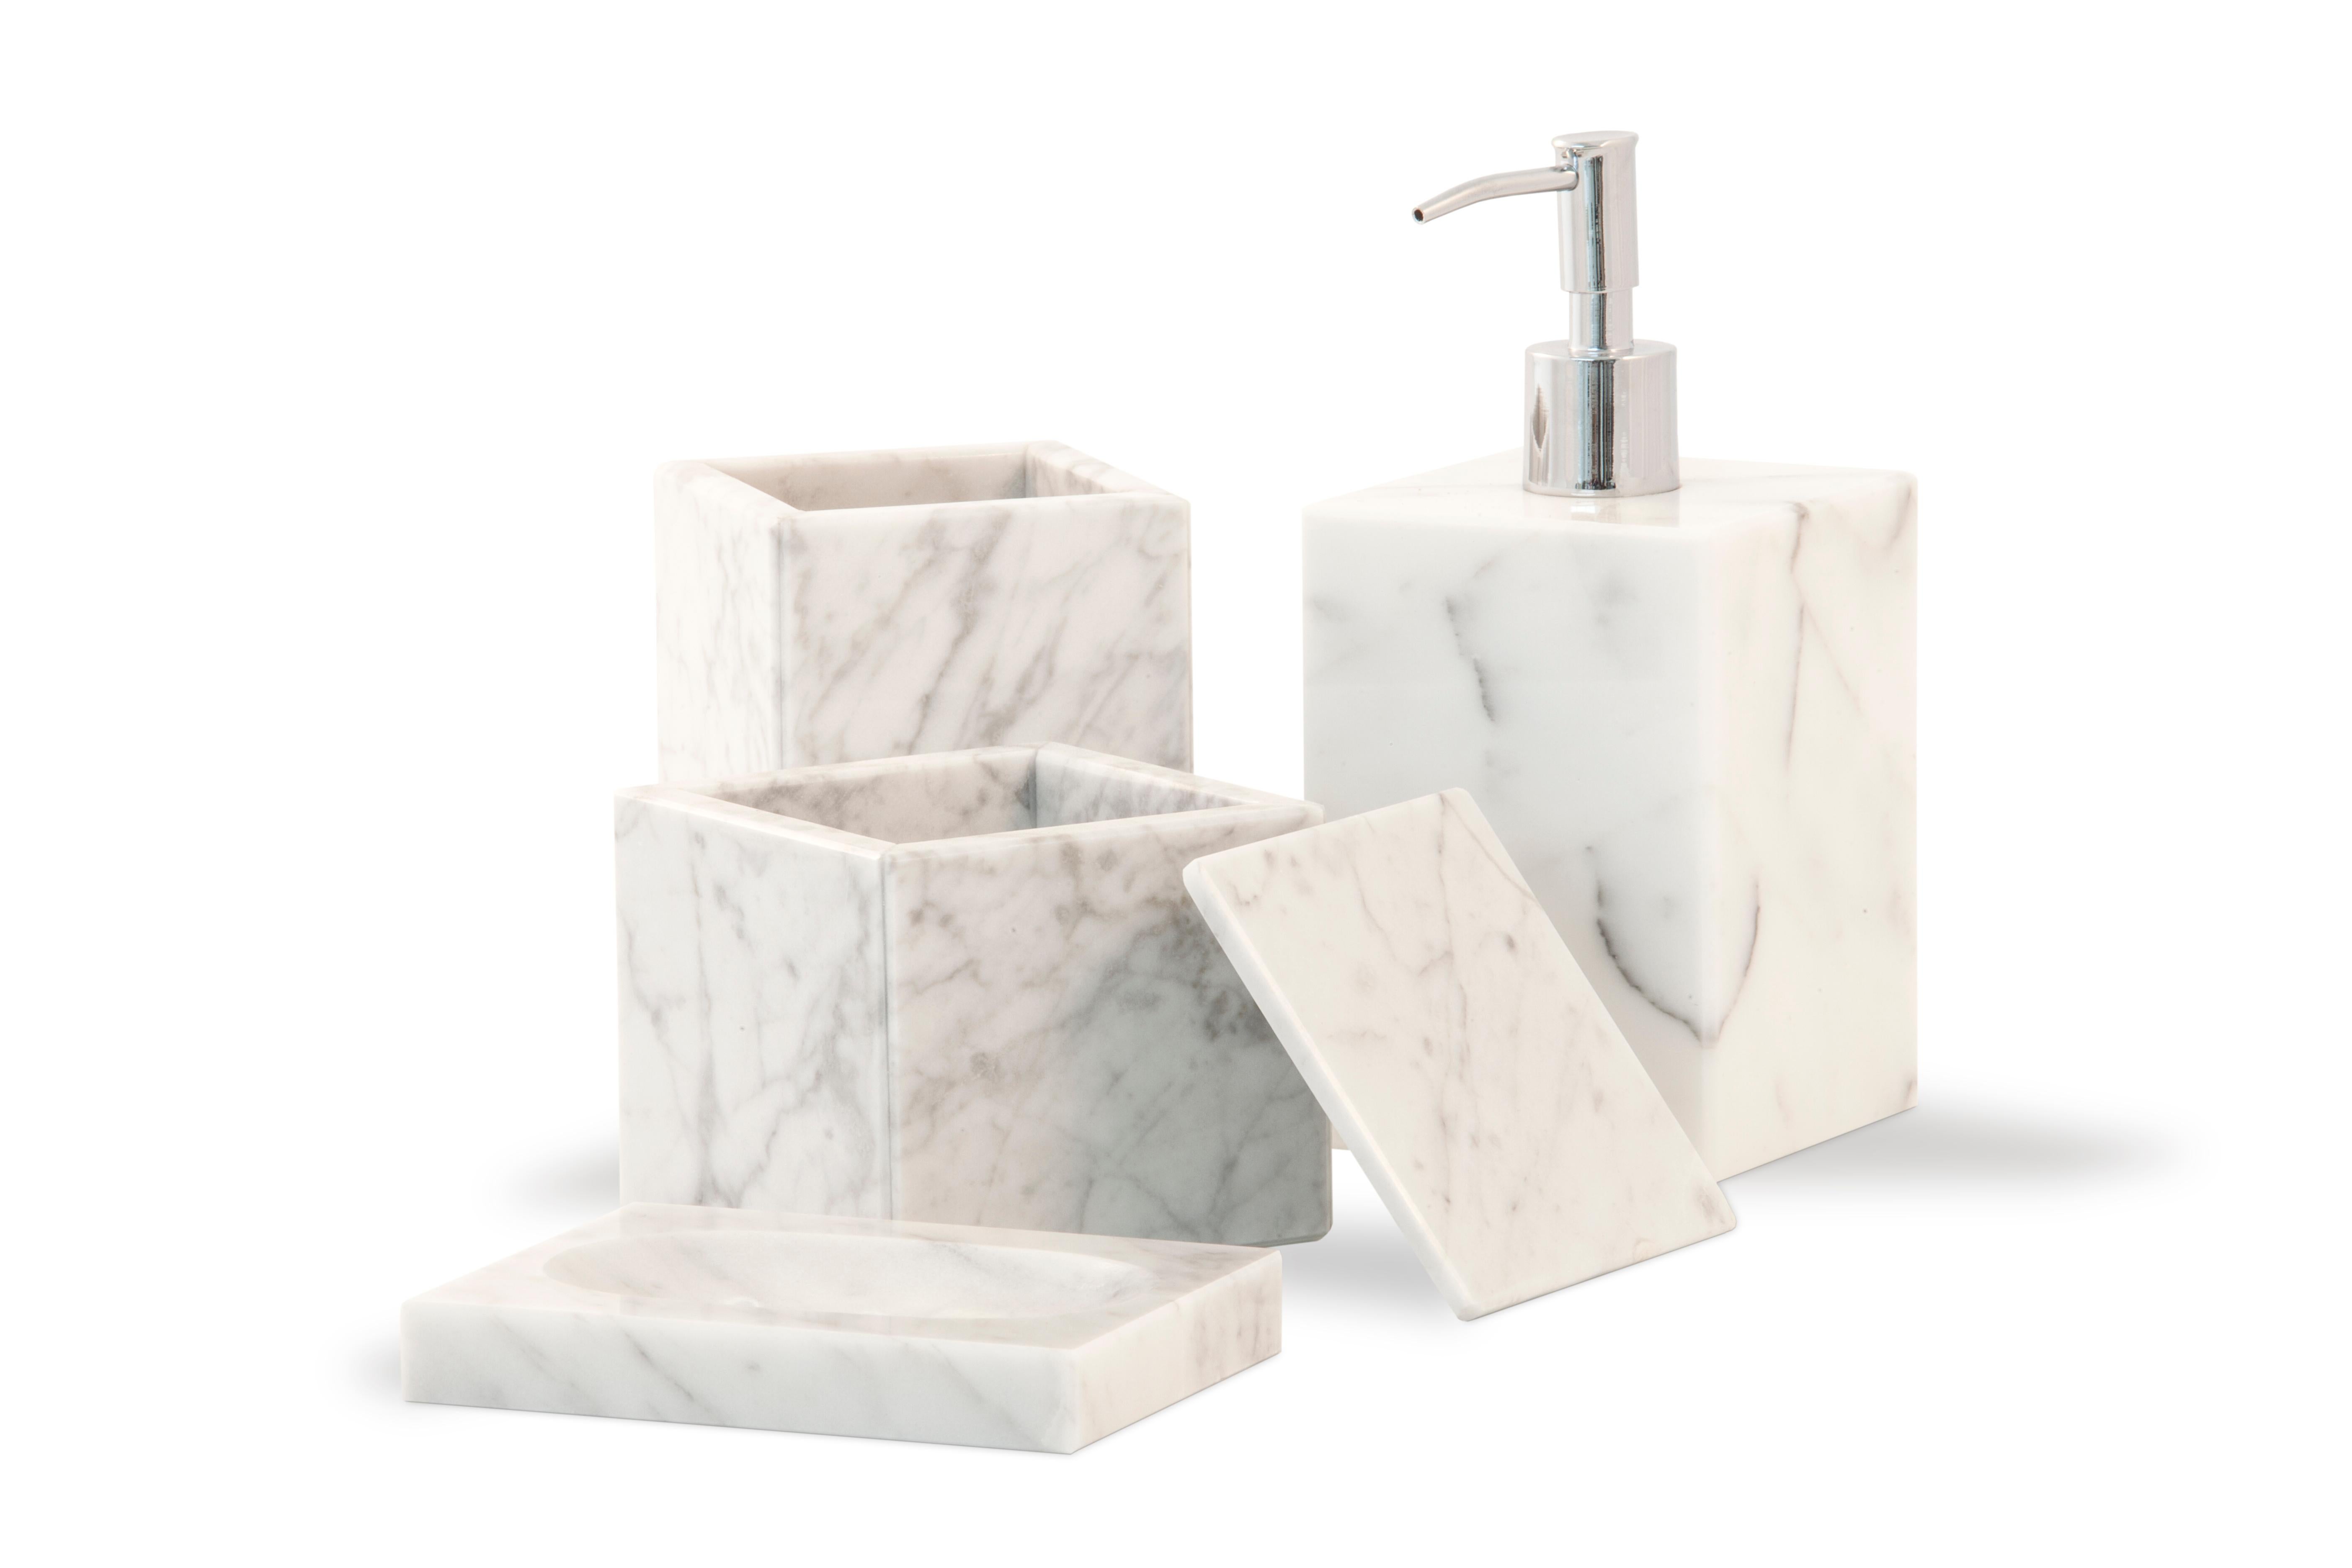 Ein Zahnbürstenhalter in quadratischer Form aus weißem Carrara-Marmor.
Jedes Stück ist in gewisser Weise einzigartig (da jeder Marmorblock unterschiedliche Maserungen und Schattierungen aufweist) und wird in Italien handgefertigt. Geringfügige